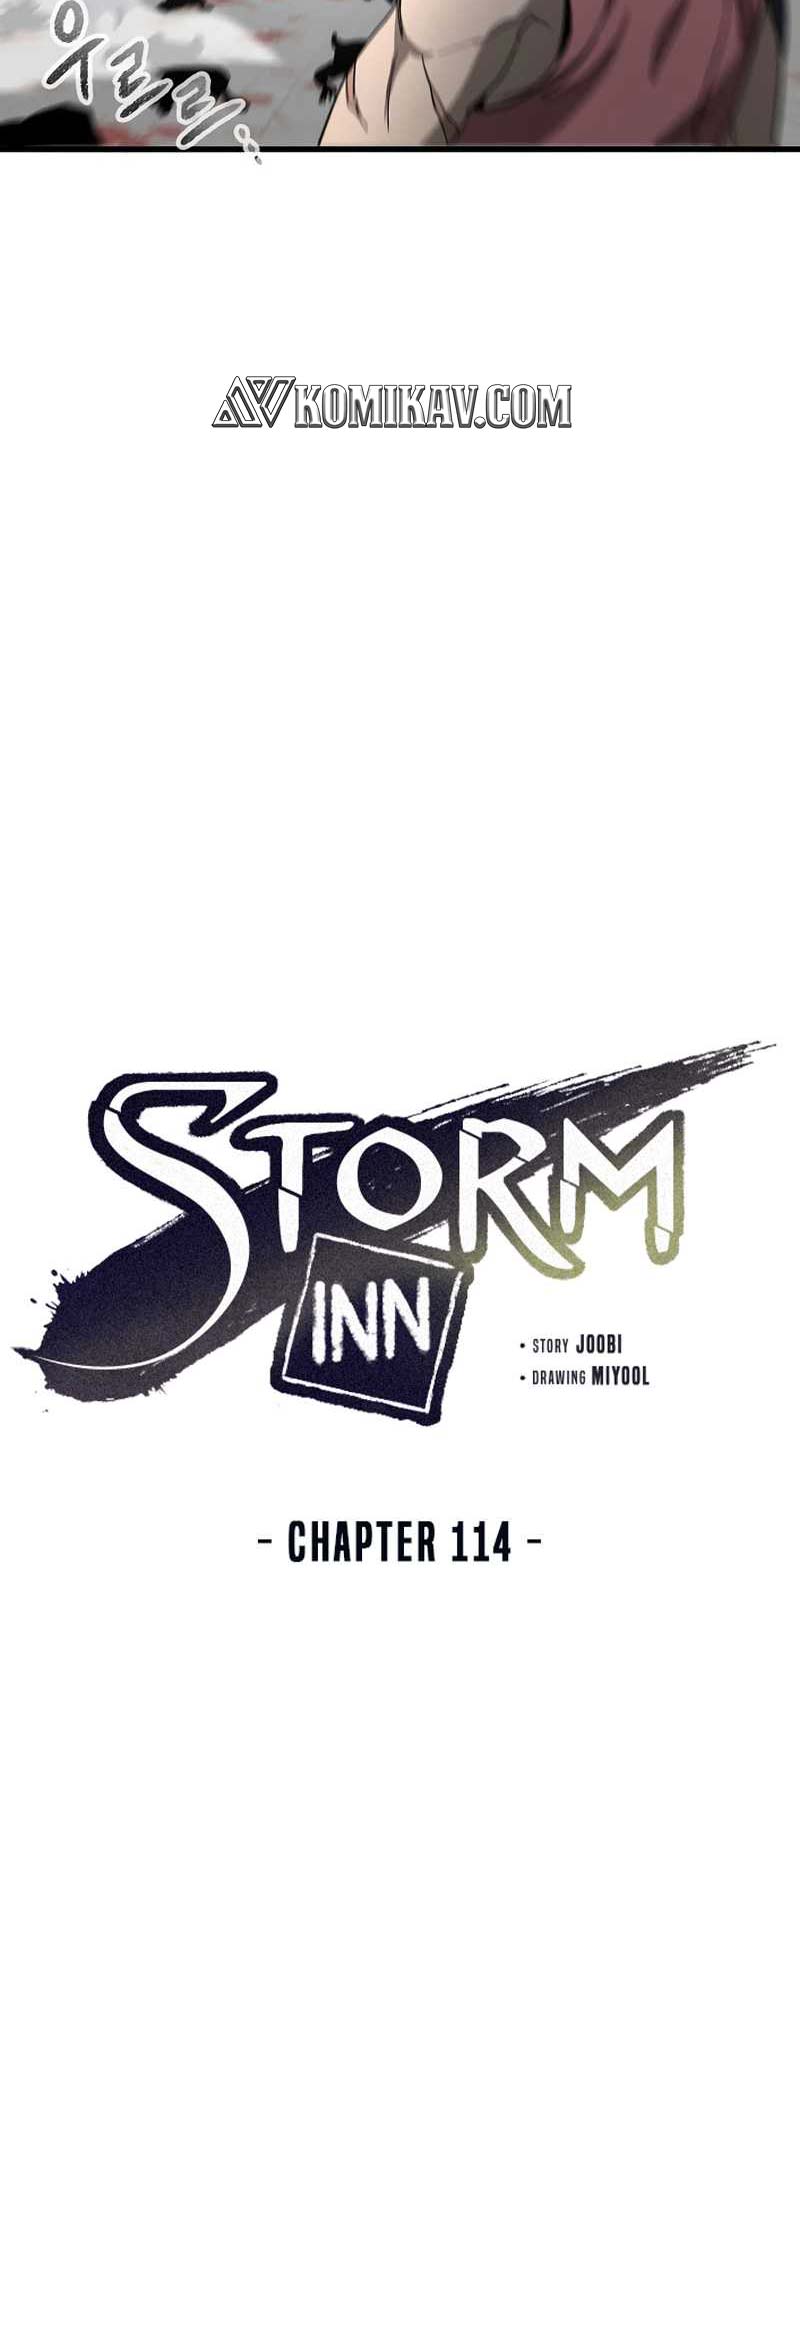 Storm Inn Chapter 114